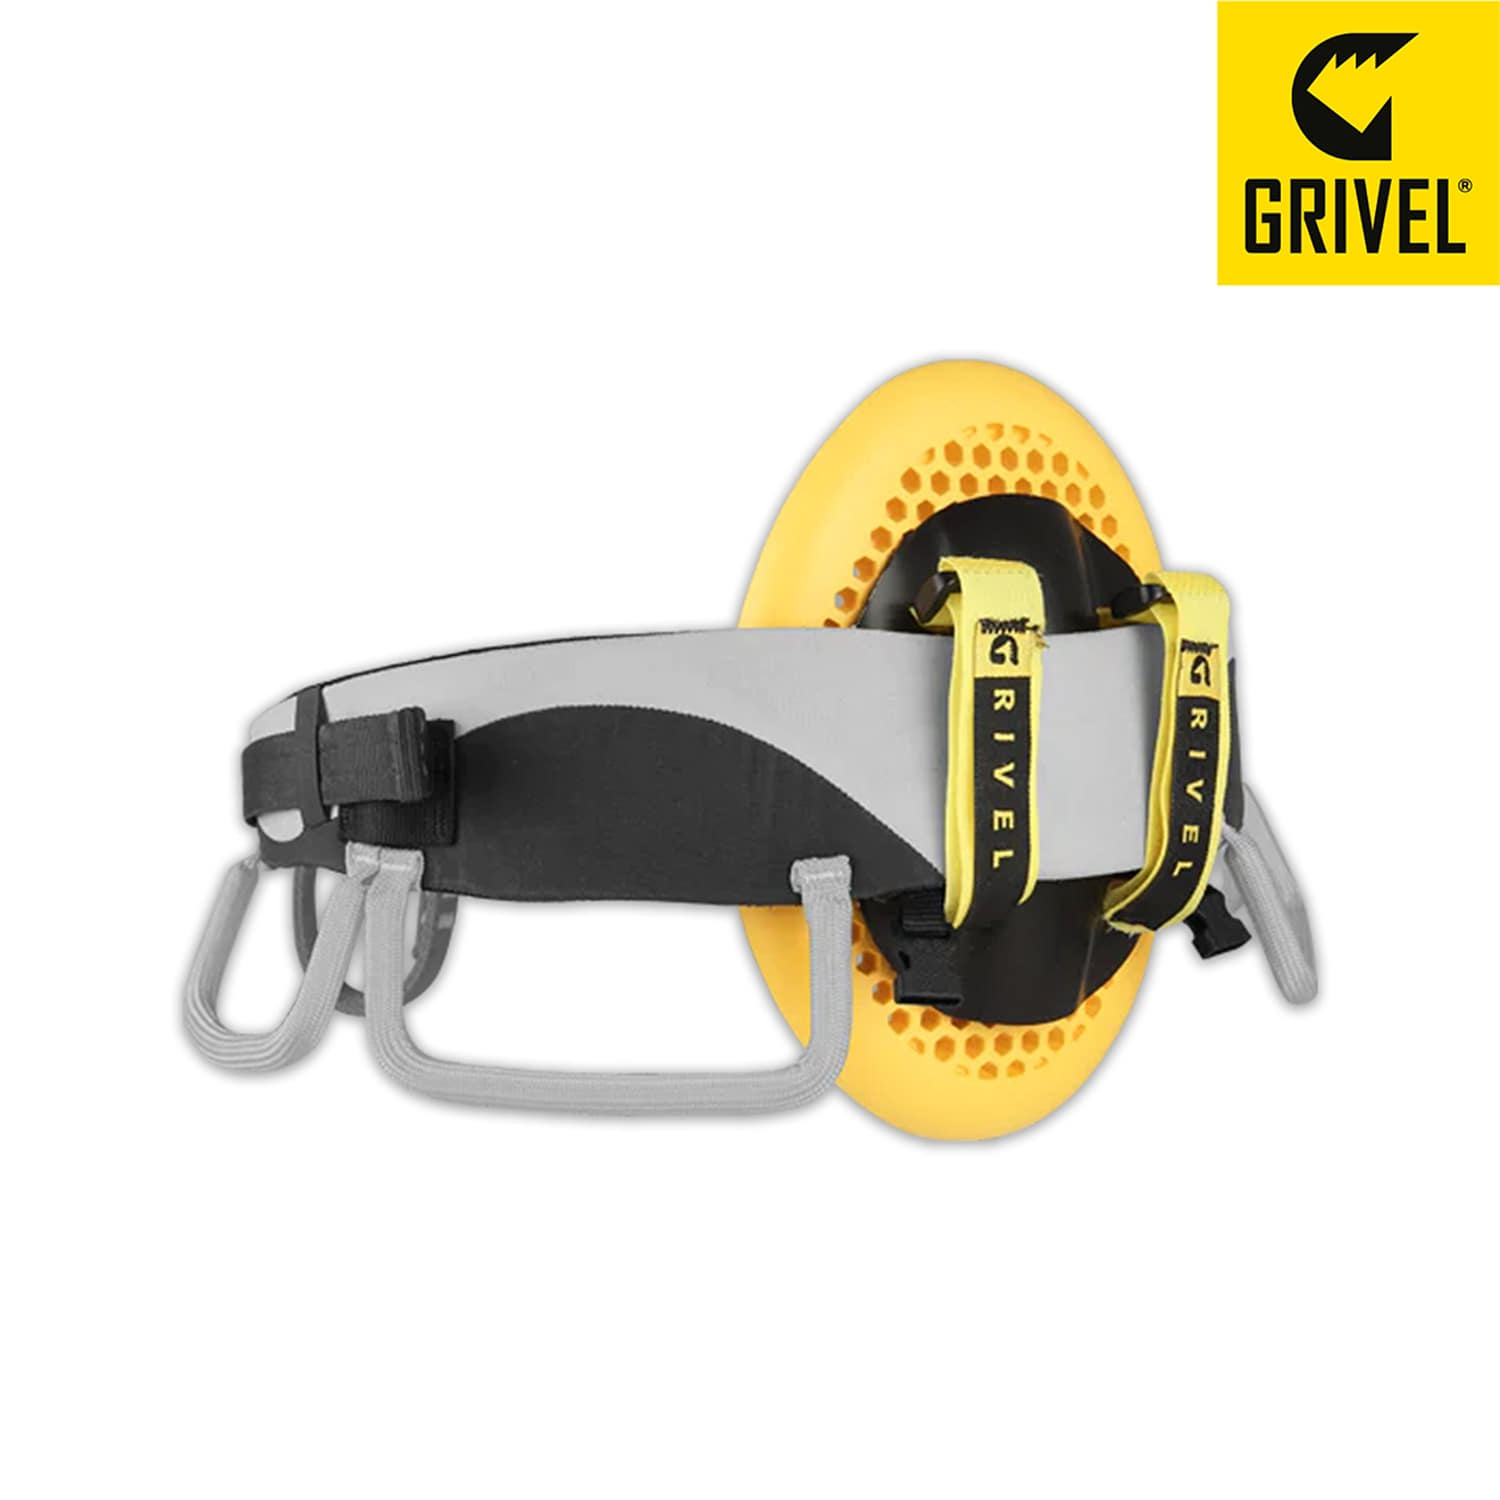 그리벨 액세서리 하네스 쉴드 accessory harness SHIELD 하네스 보조장치(허벅지와 허리의 충격에너지 흡수 및 분산)